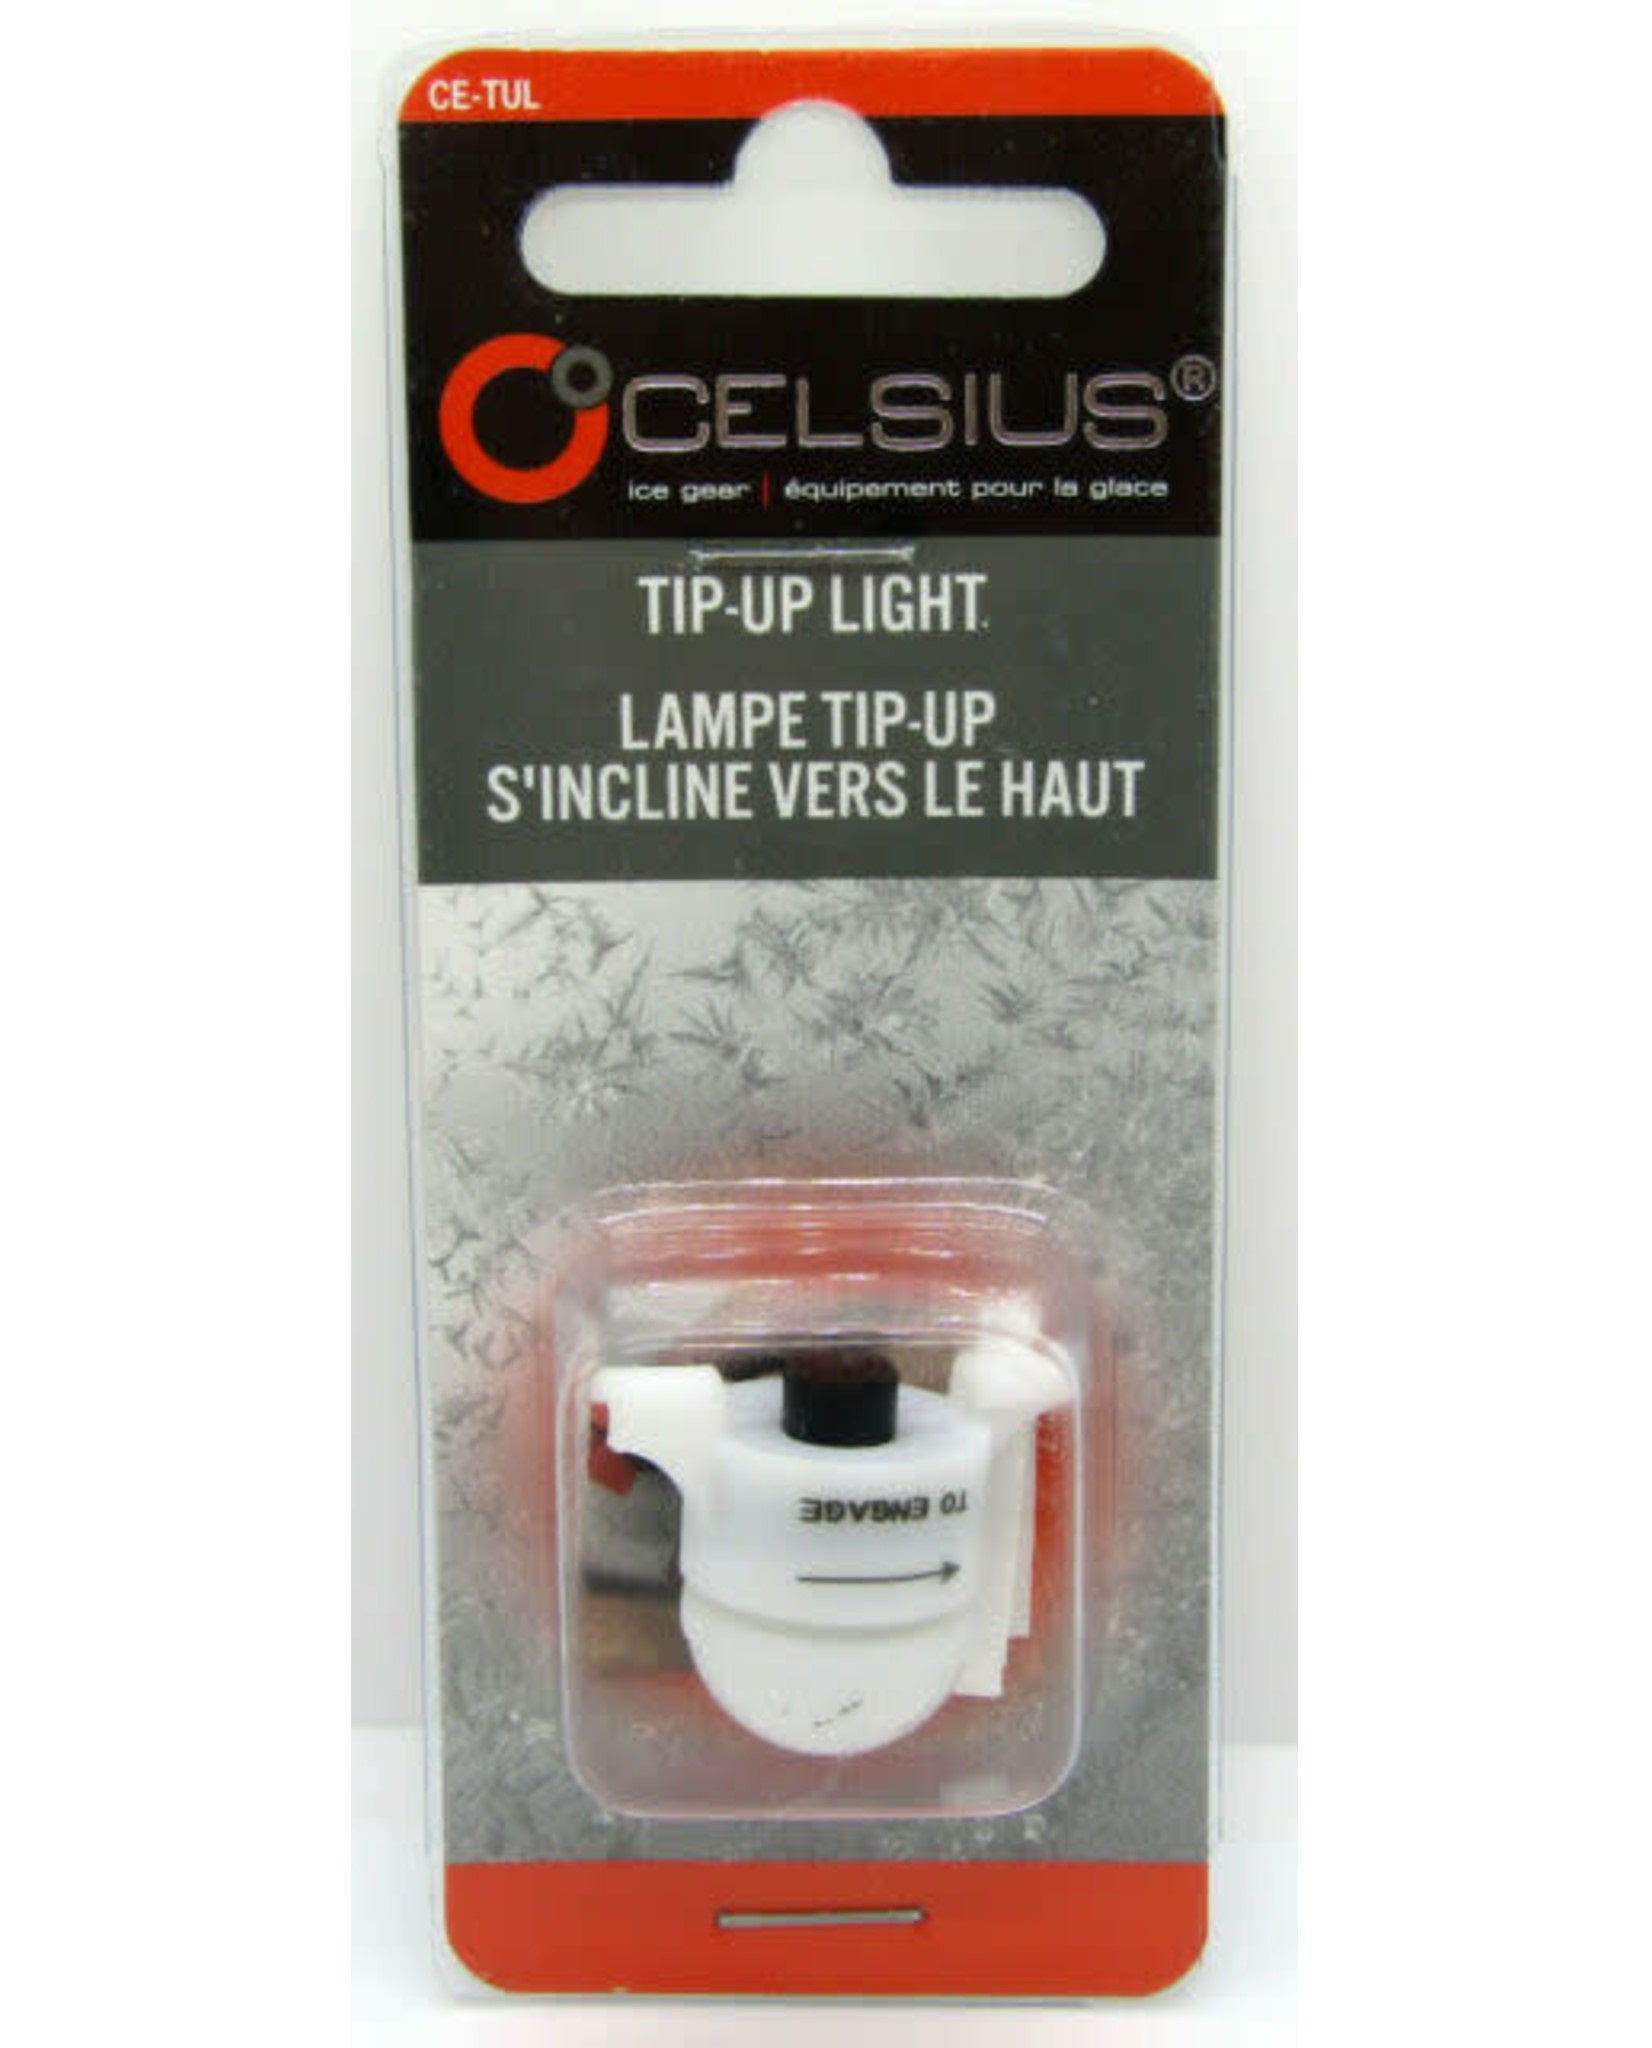 Celsius Tip-Up Light